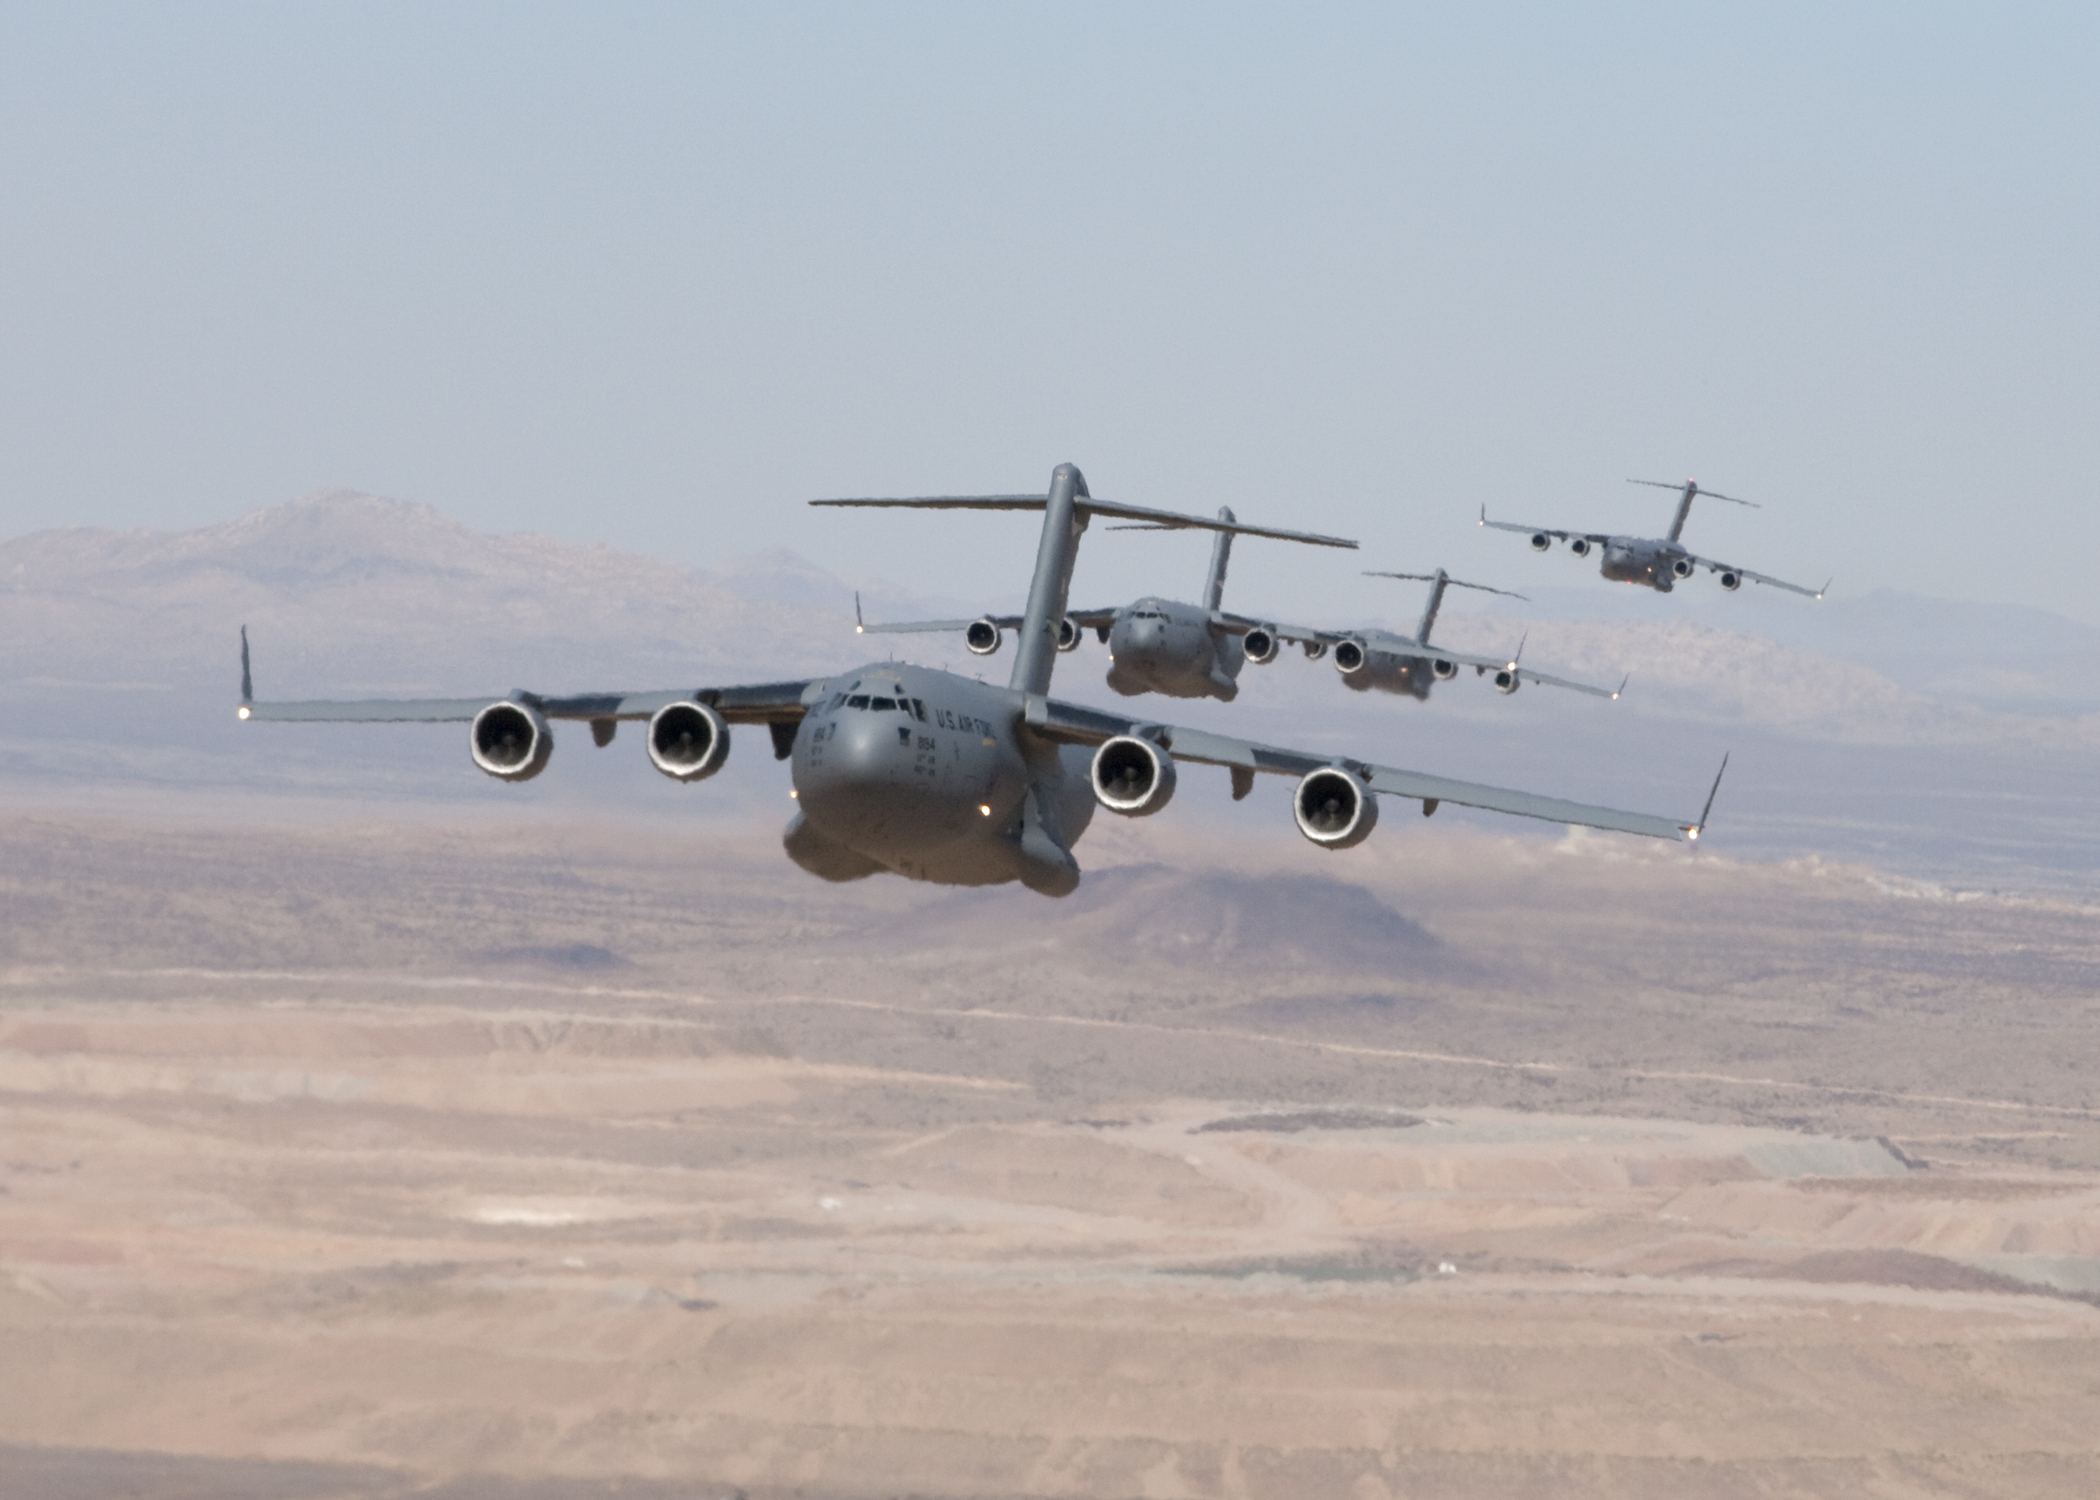 Formation flight system keeps C-17s in line – Alert 5